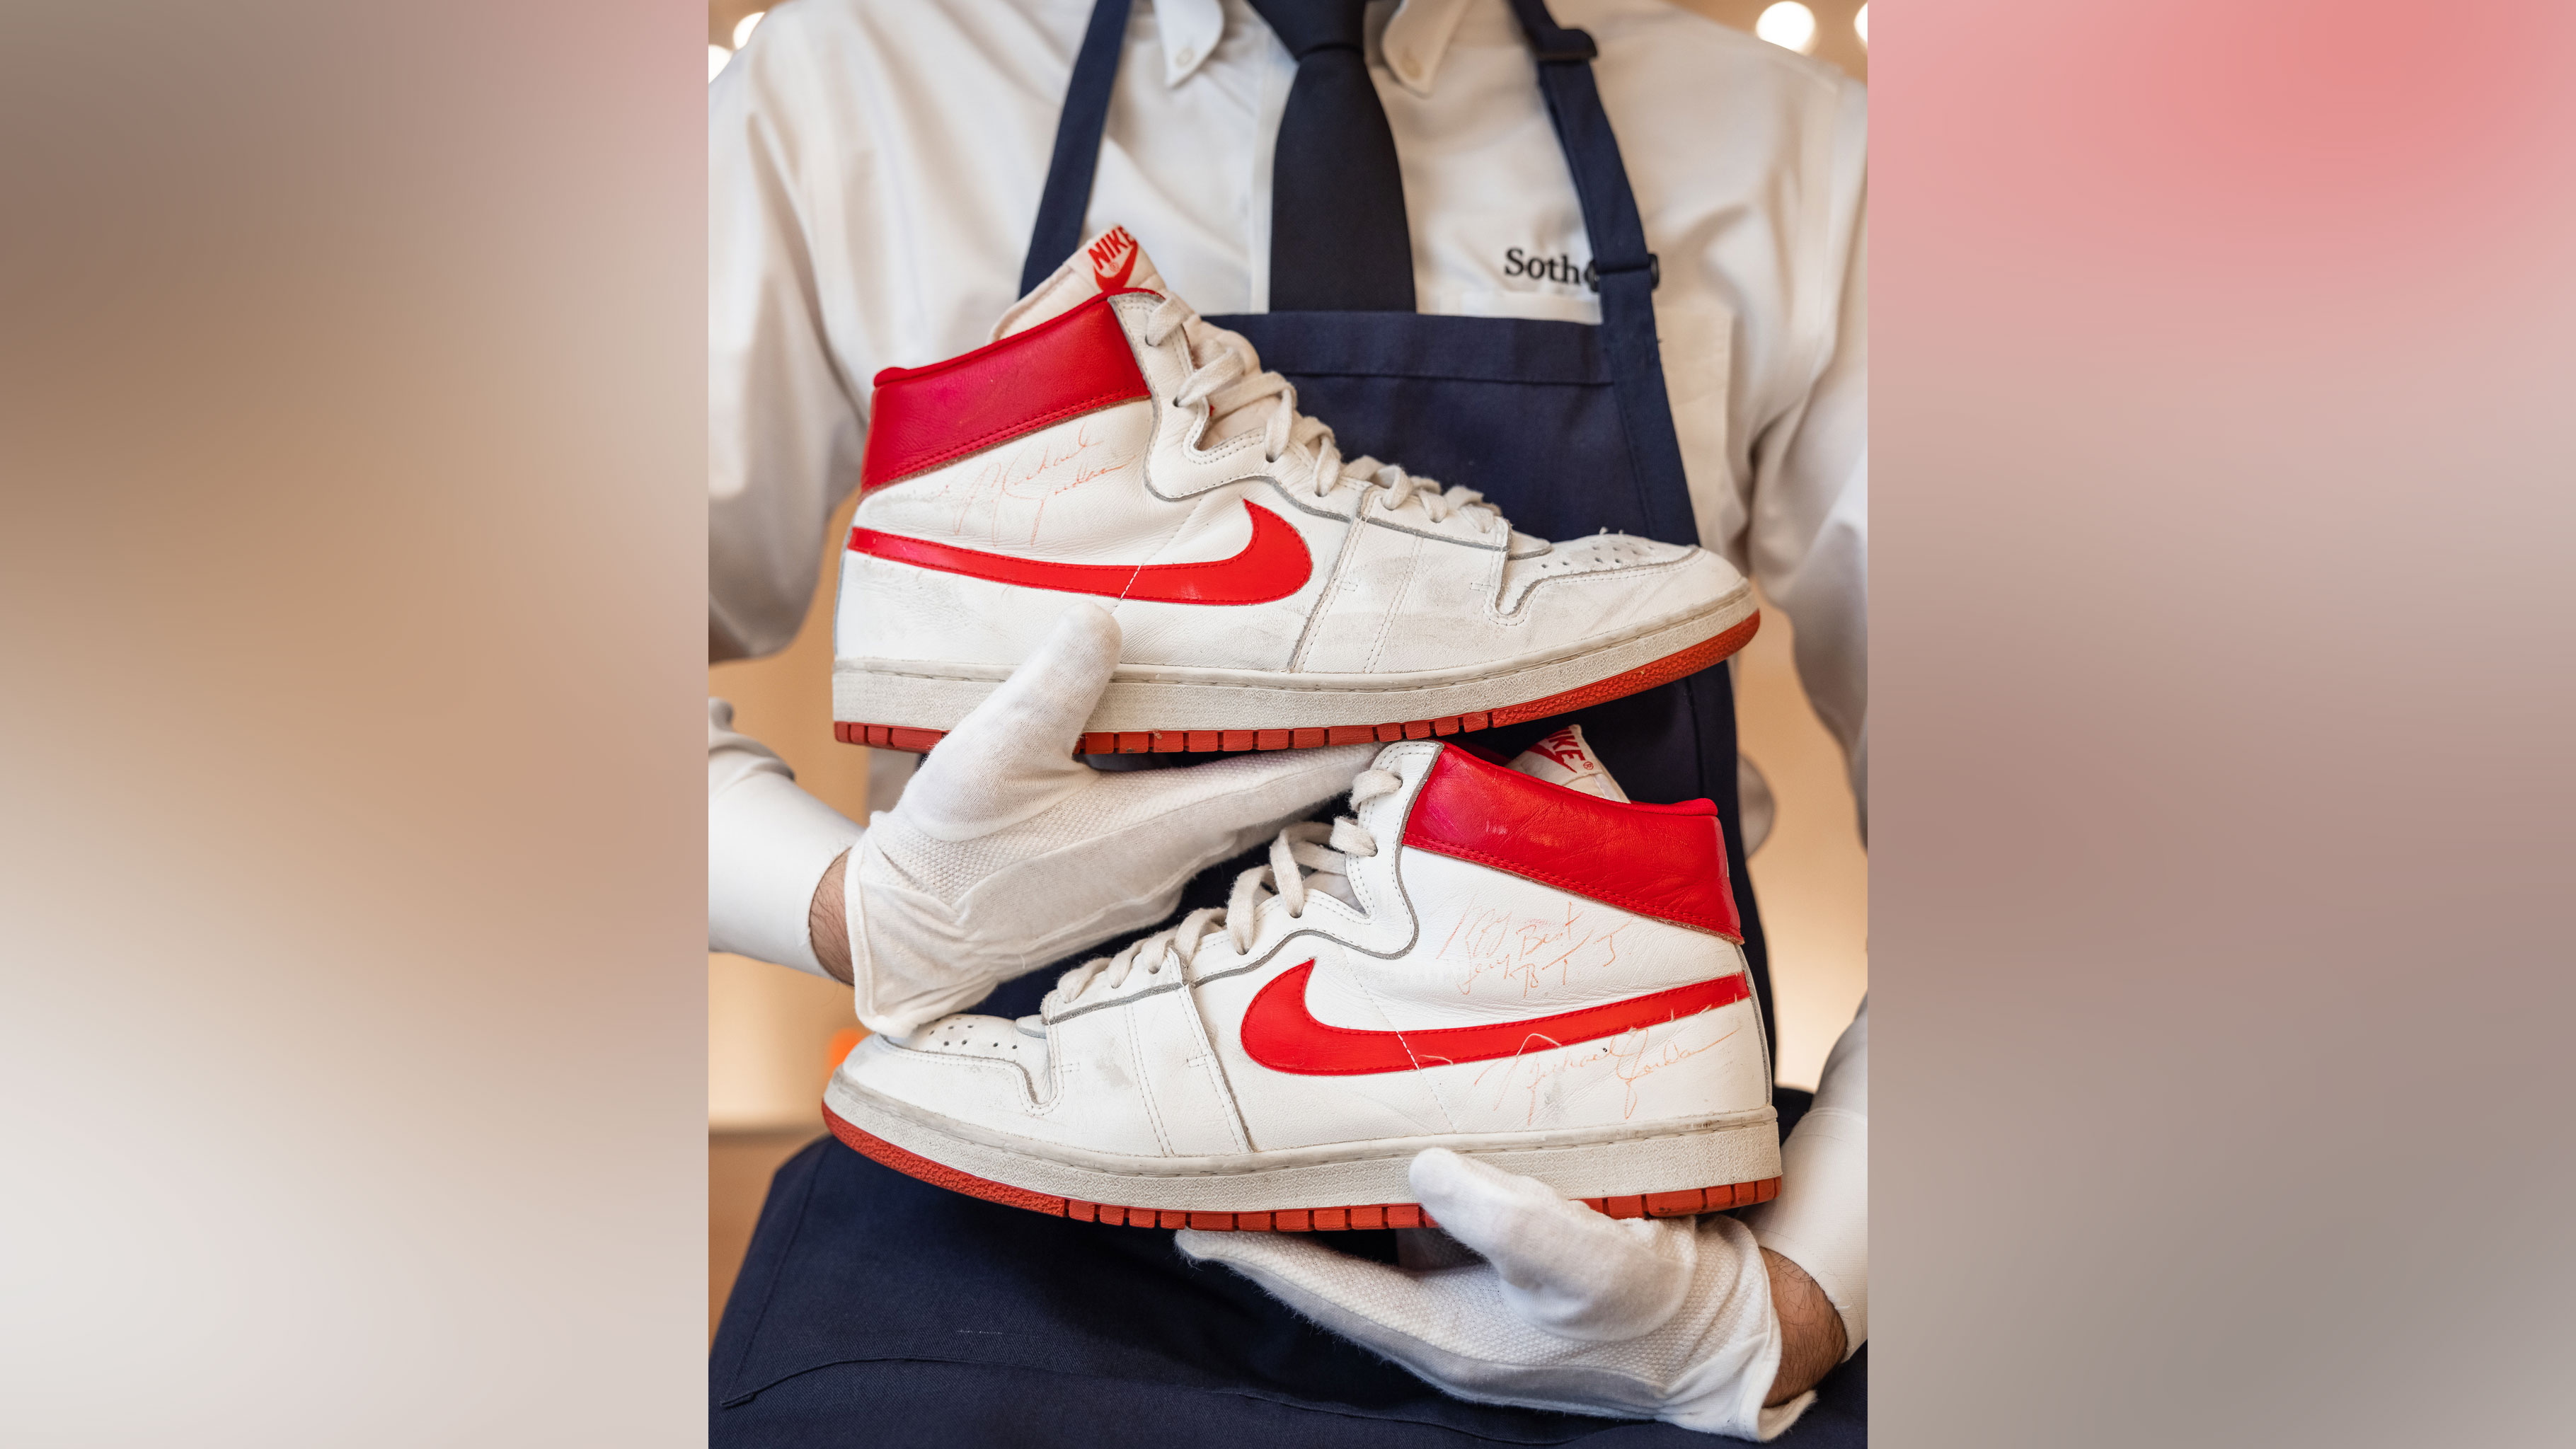 Children Center theater motif Michael Jordan's sneakers sell for record-breaking $1.47 million - CNN Style